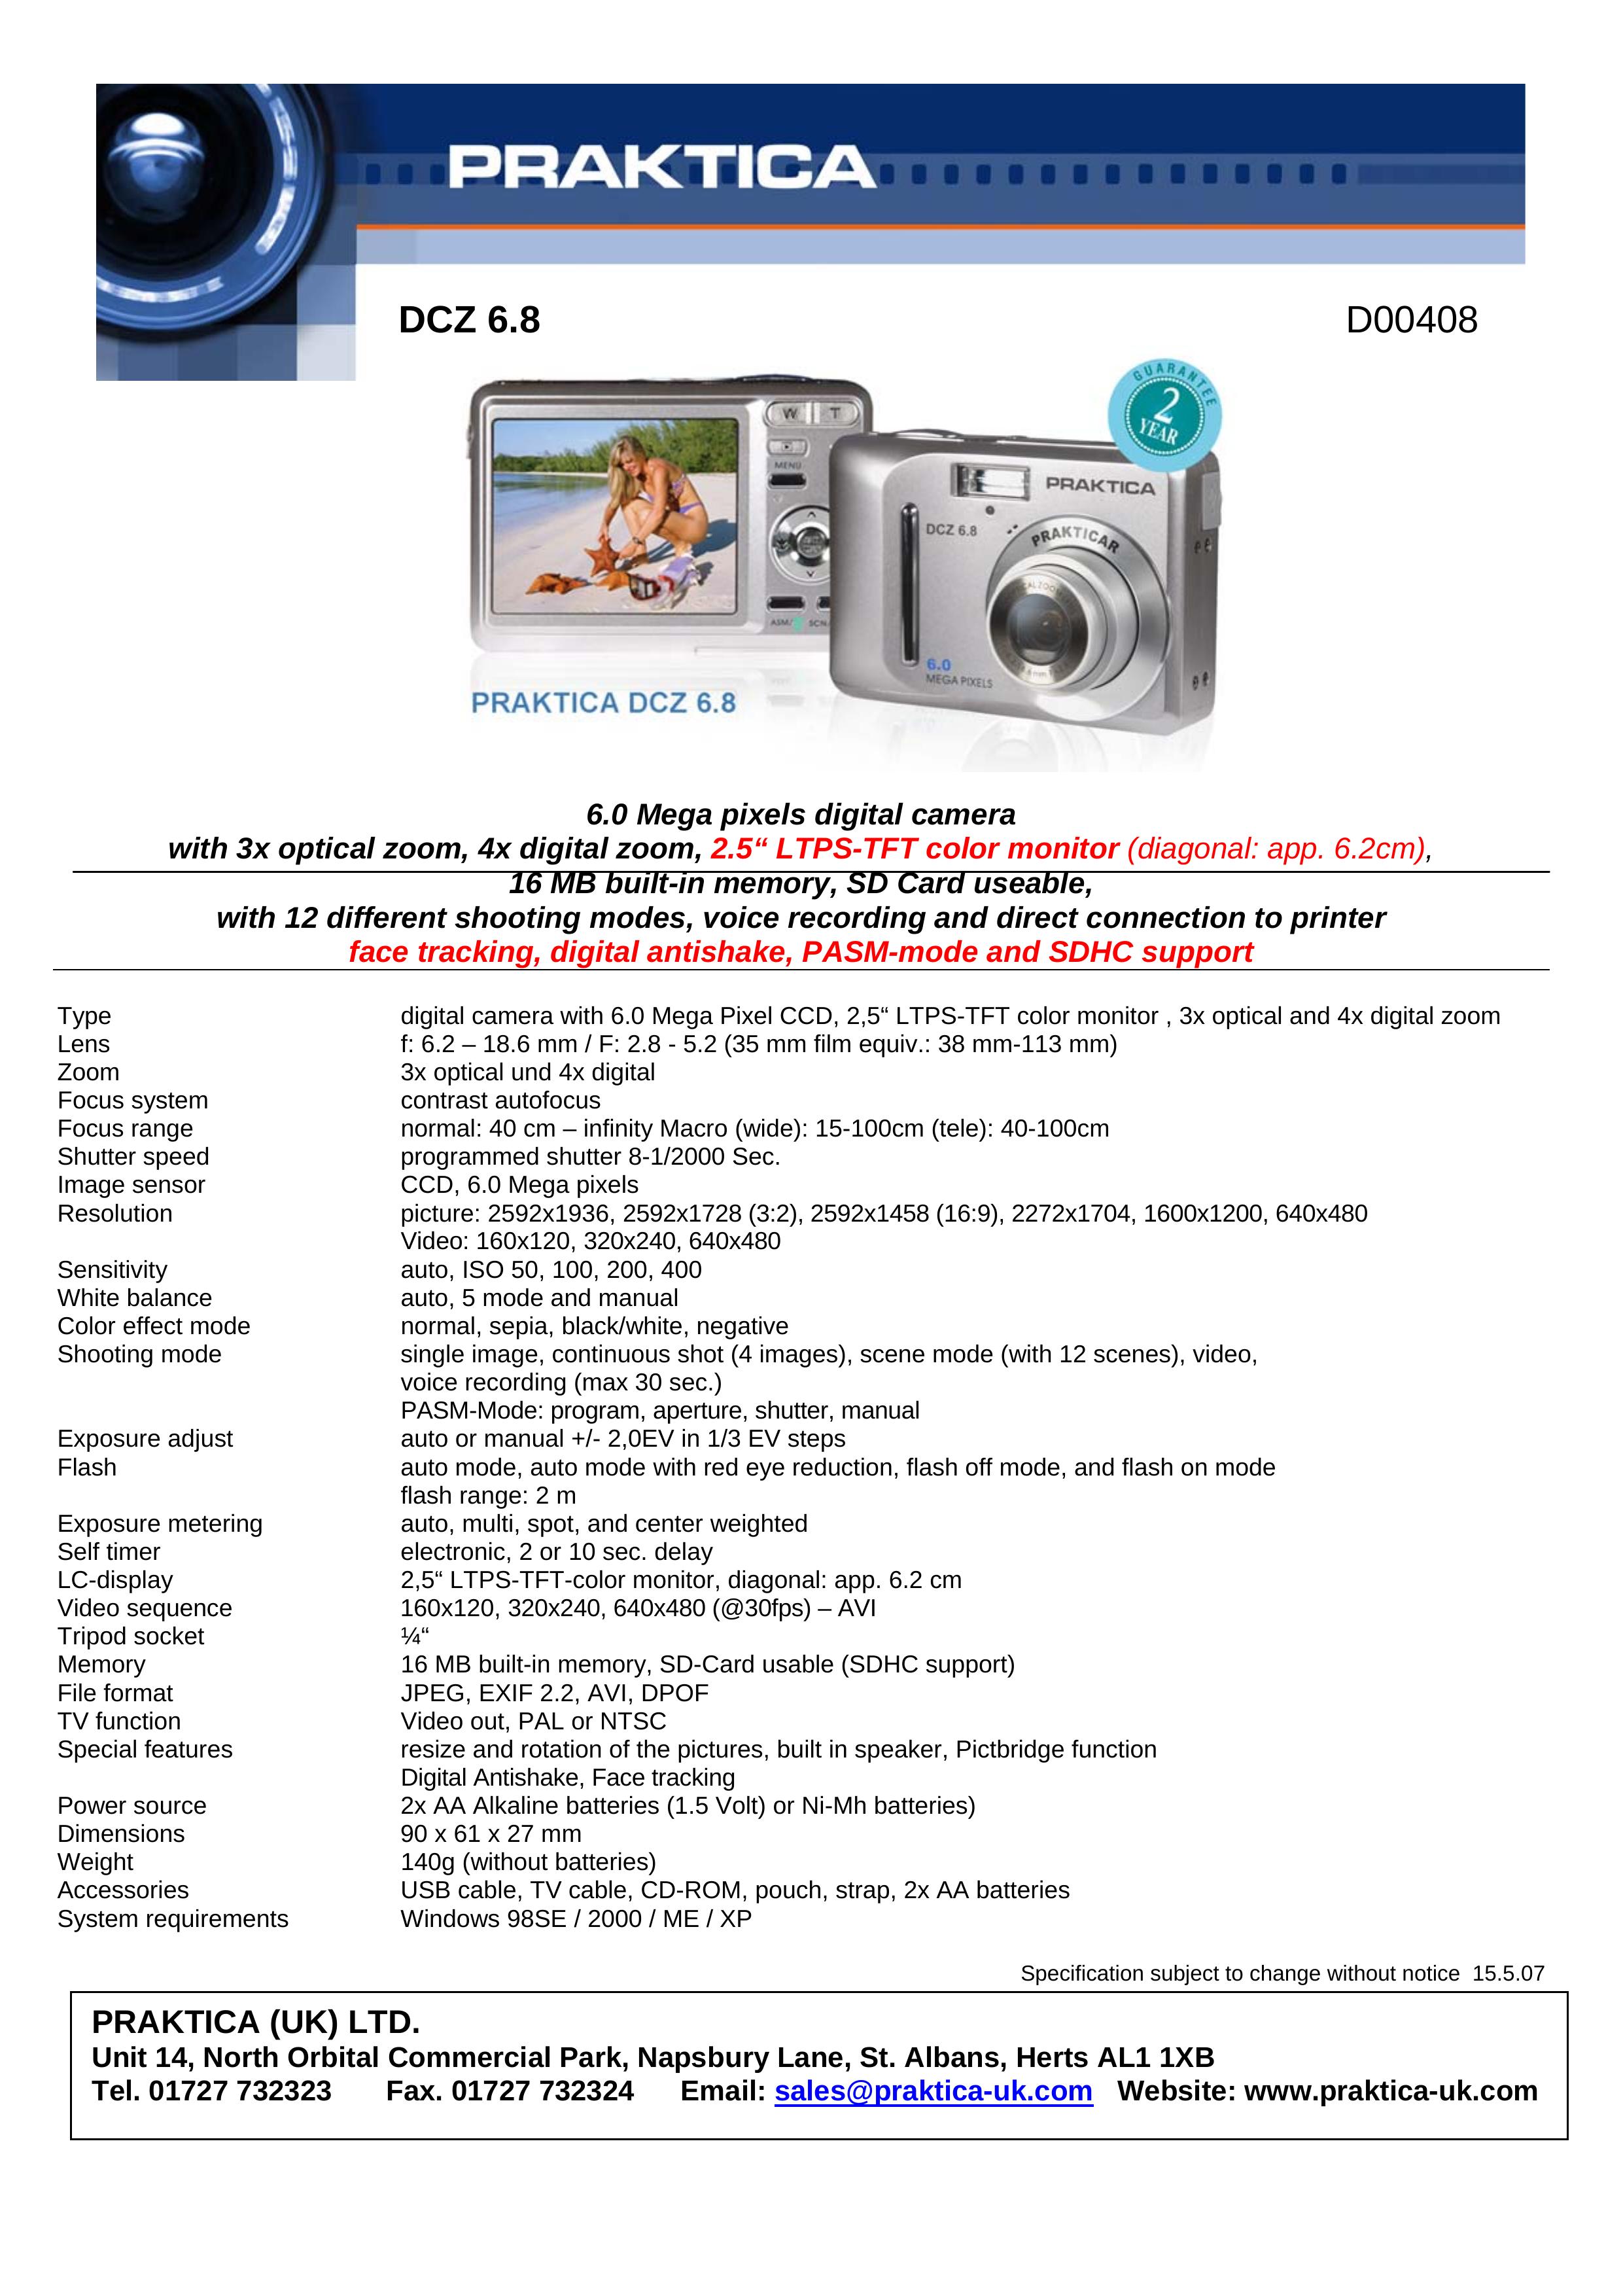 Praktica D00408 Digital Camera User Manual